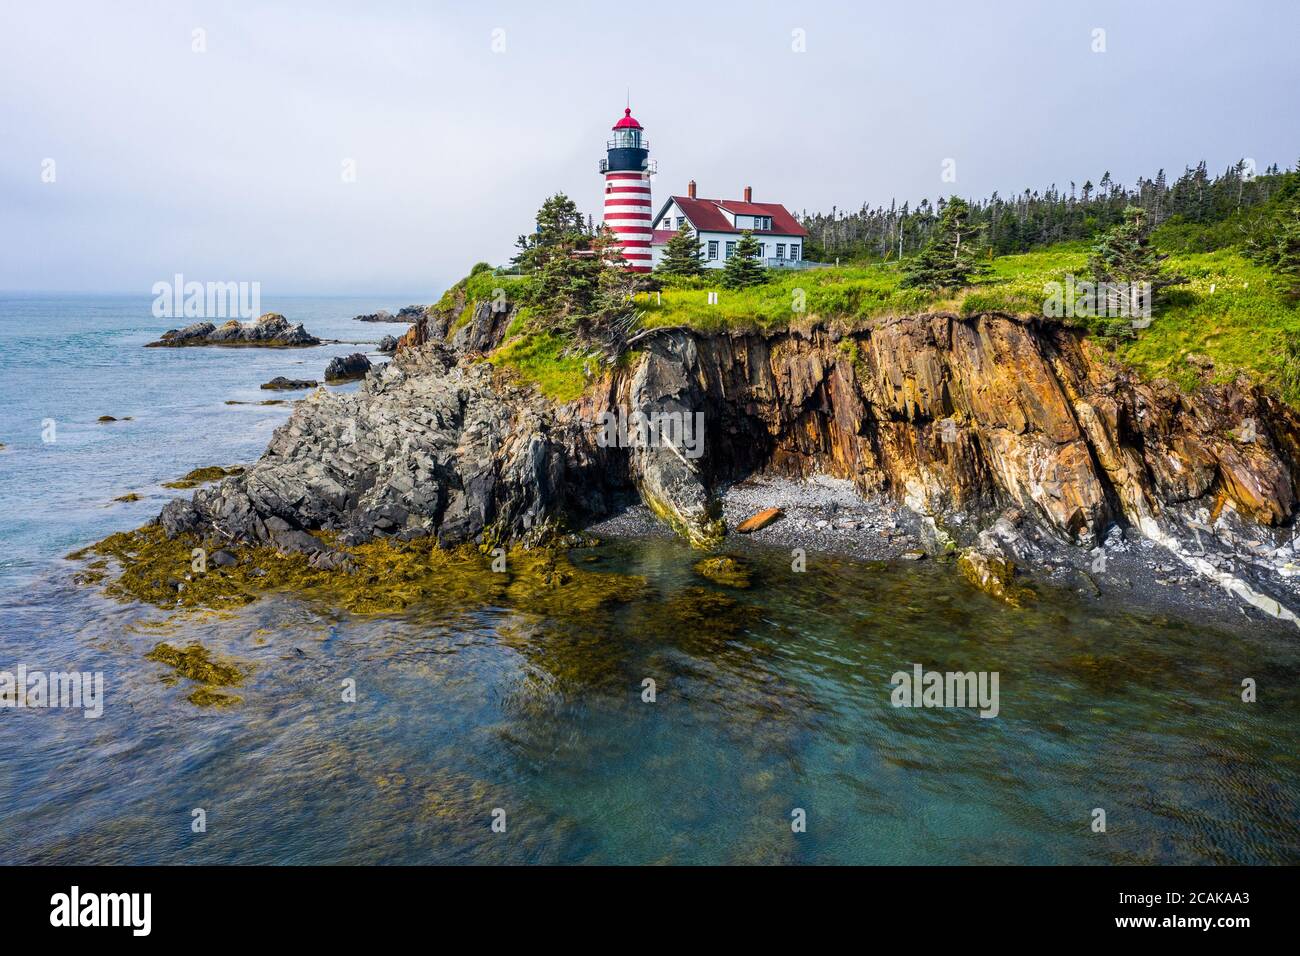 West Quoddy Head Lighthouse, parc national de Quoddy Head, Lubec, Maine, États-Unis Banque D'Images